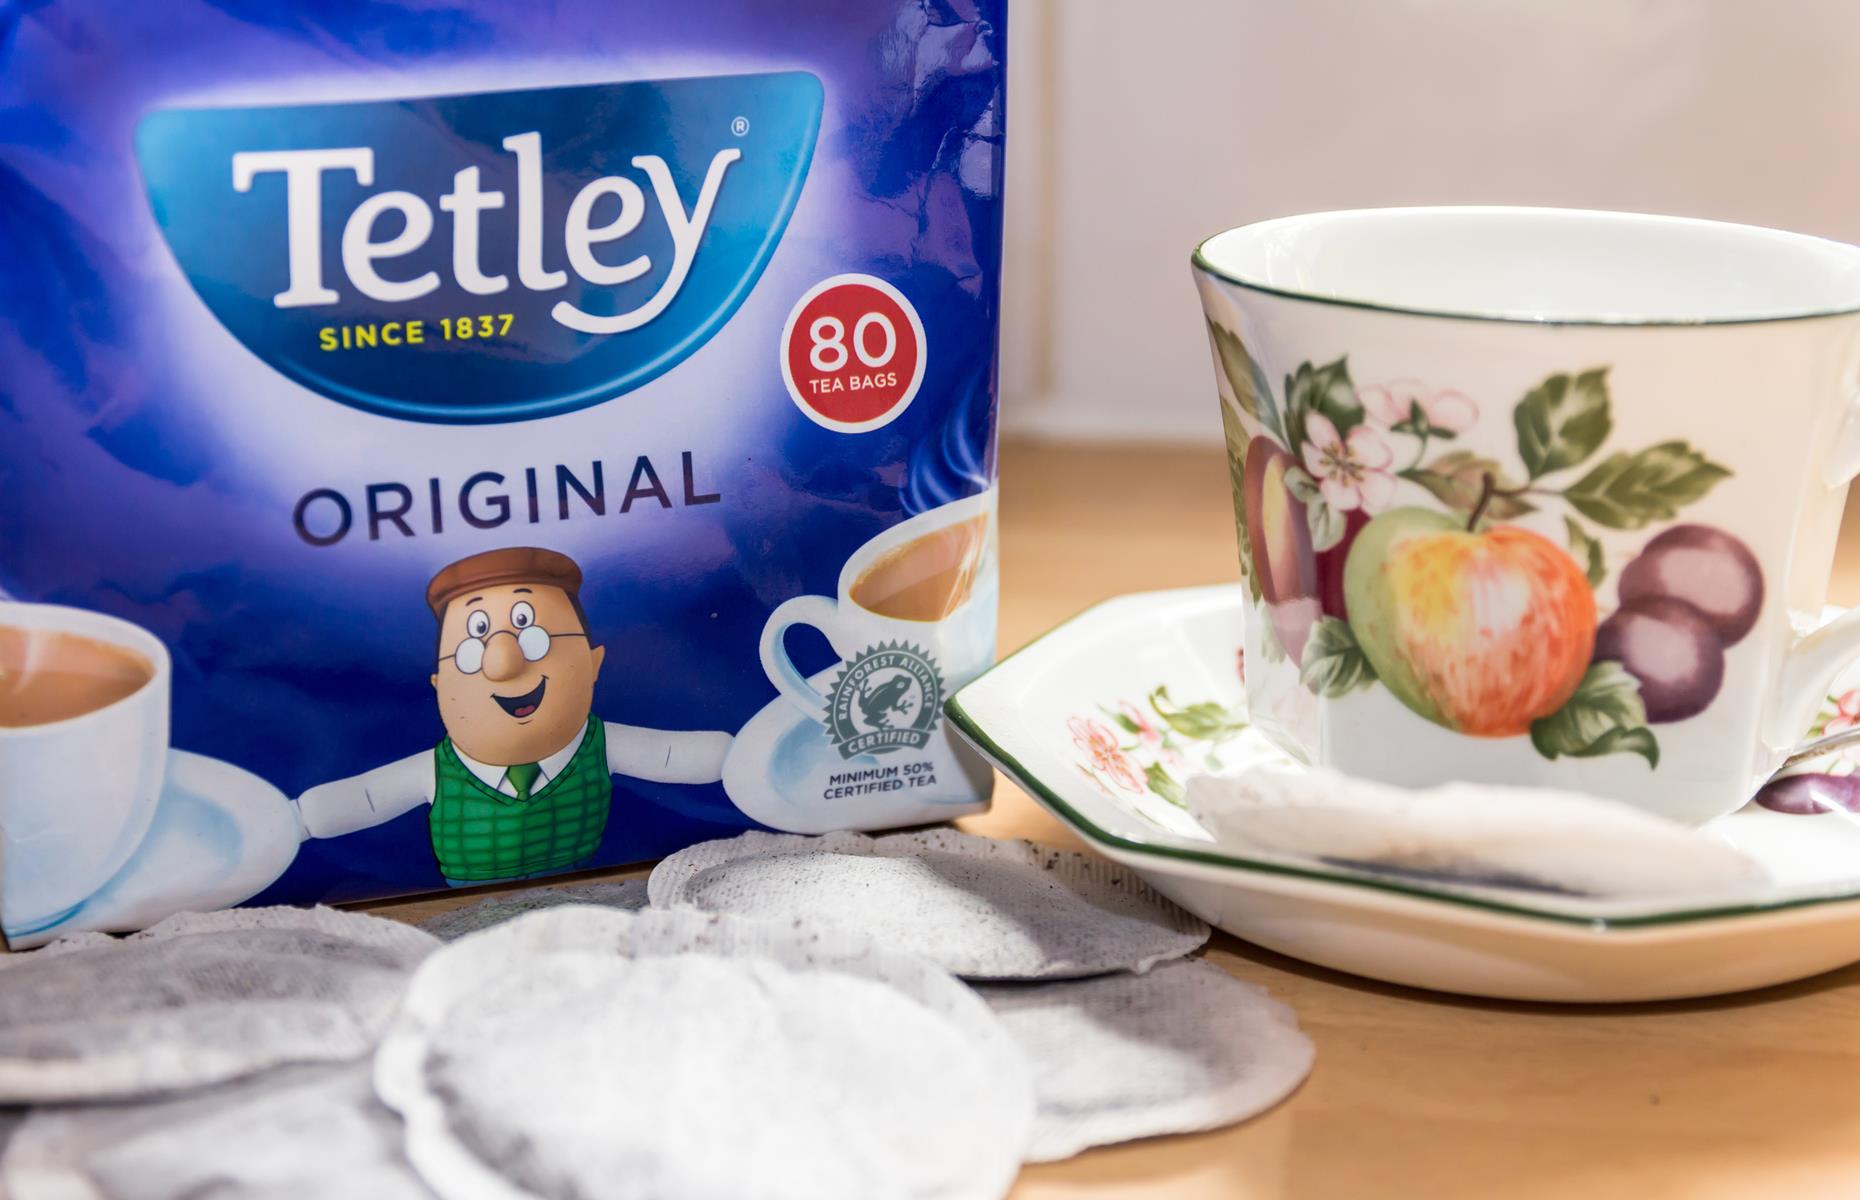 Tetley Tea began as an English family firm